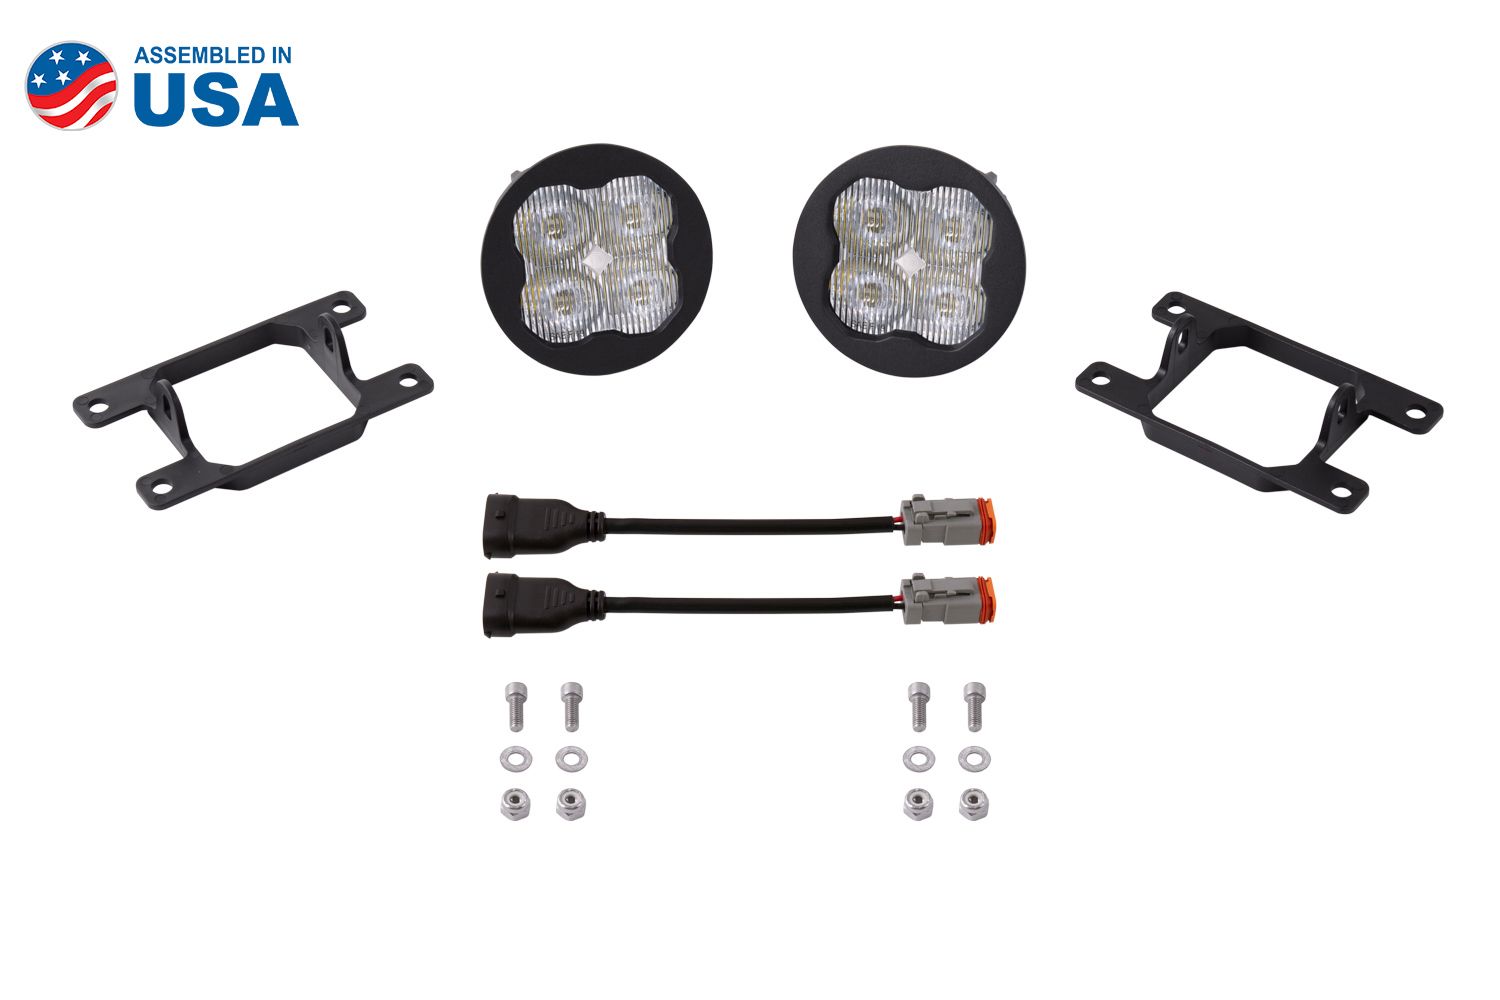 SS3 LED Fog Light Kit for 2015-2017 Ford Mustang Diode Dynamics-